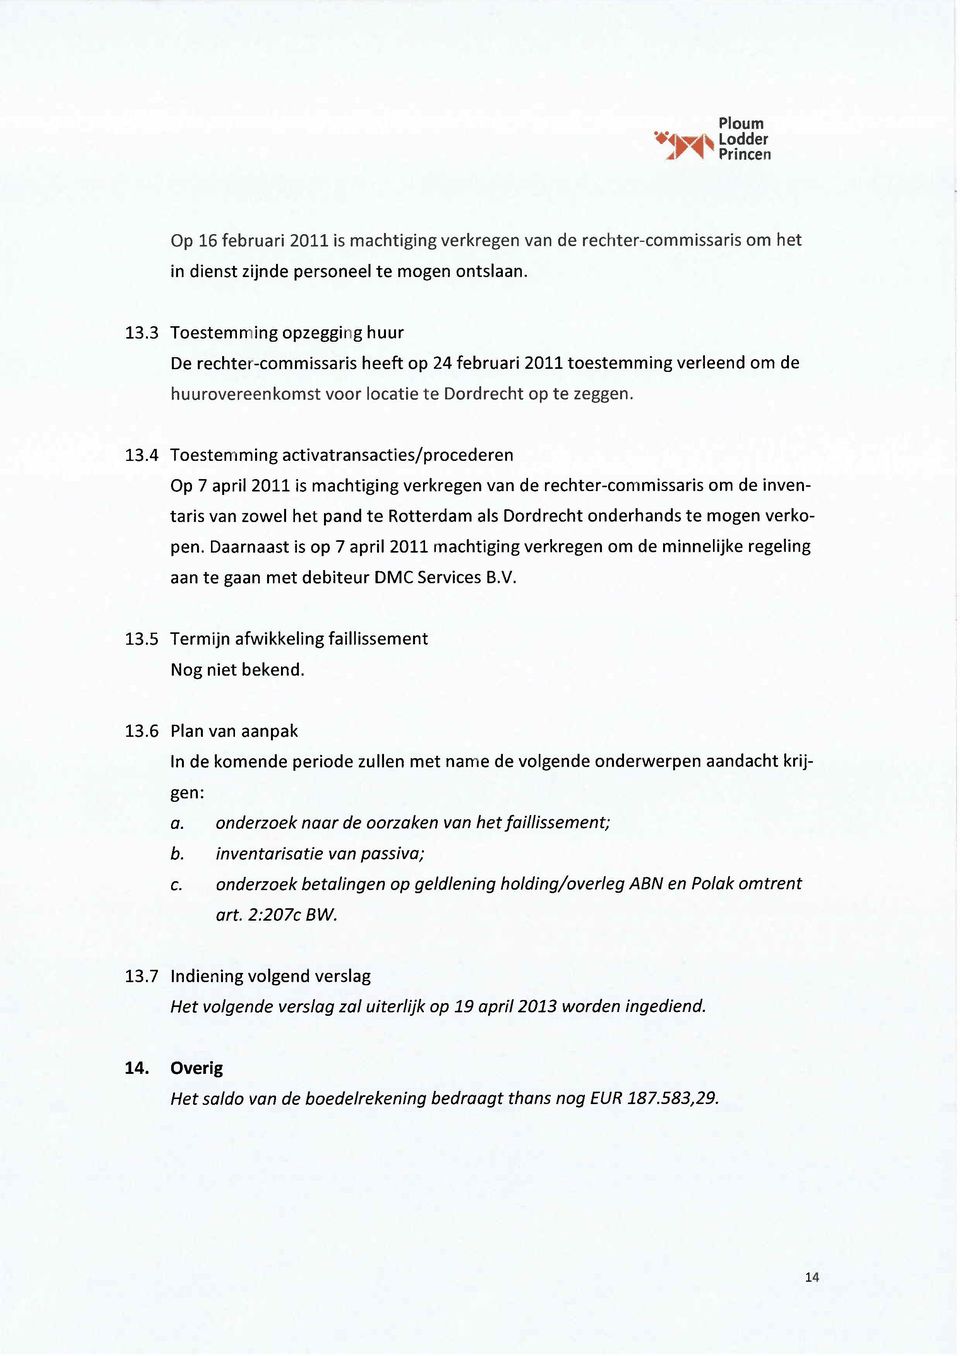 4 Toestemming activatransacties/procederen Op 7 april 2011 is machtiging verkregen van de rechter-commissaris om de inventans van zowel het pand te Rotterdam als Dordrecht onderhands te mogen